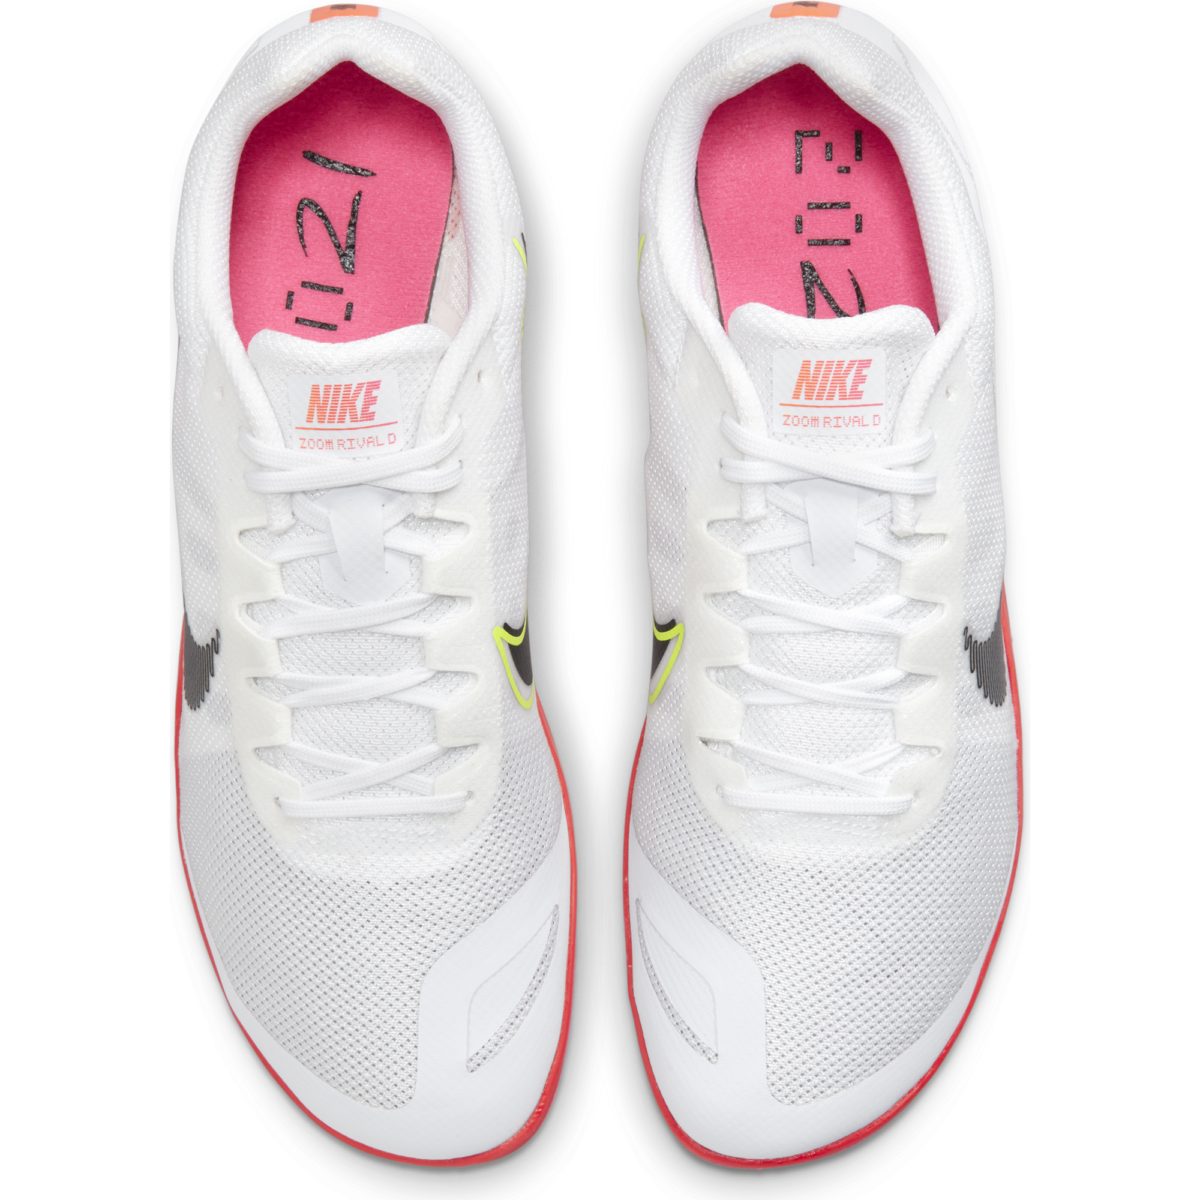 Unisex Nike Zoom Rival D 10 DM2334-100